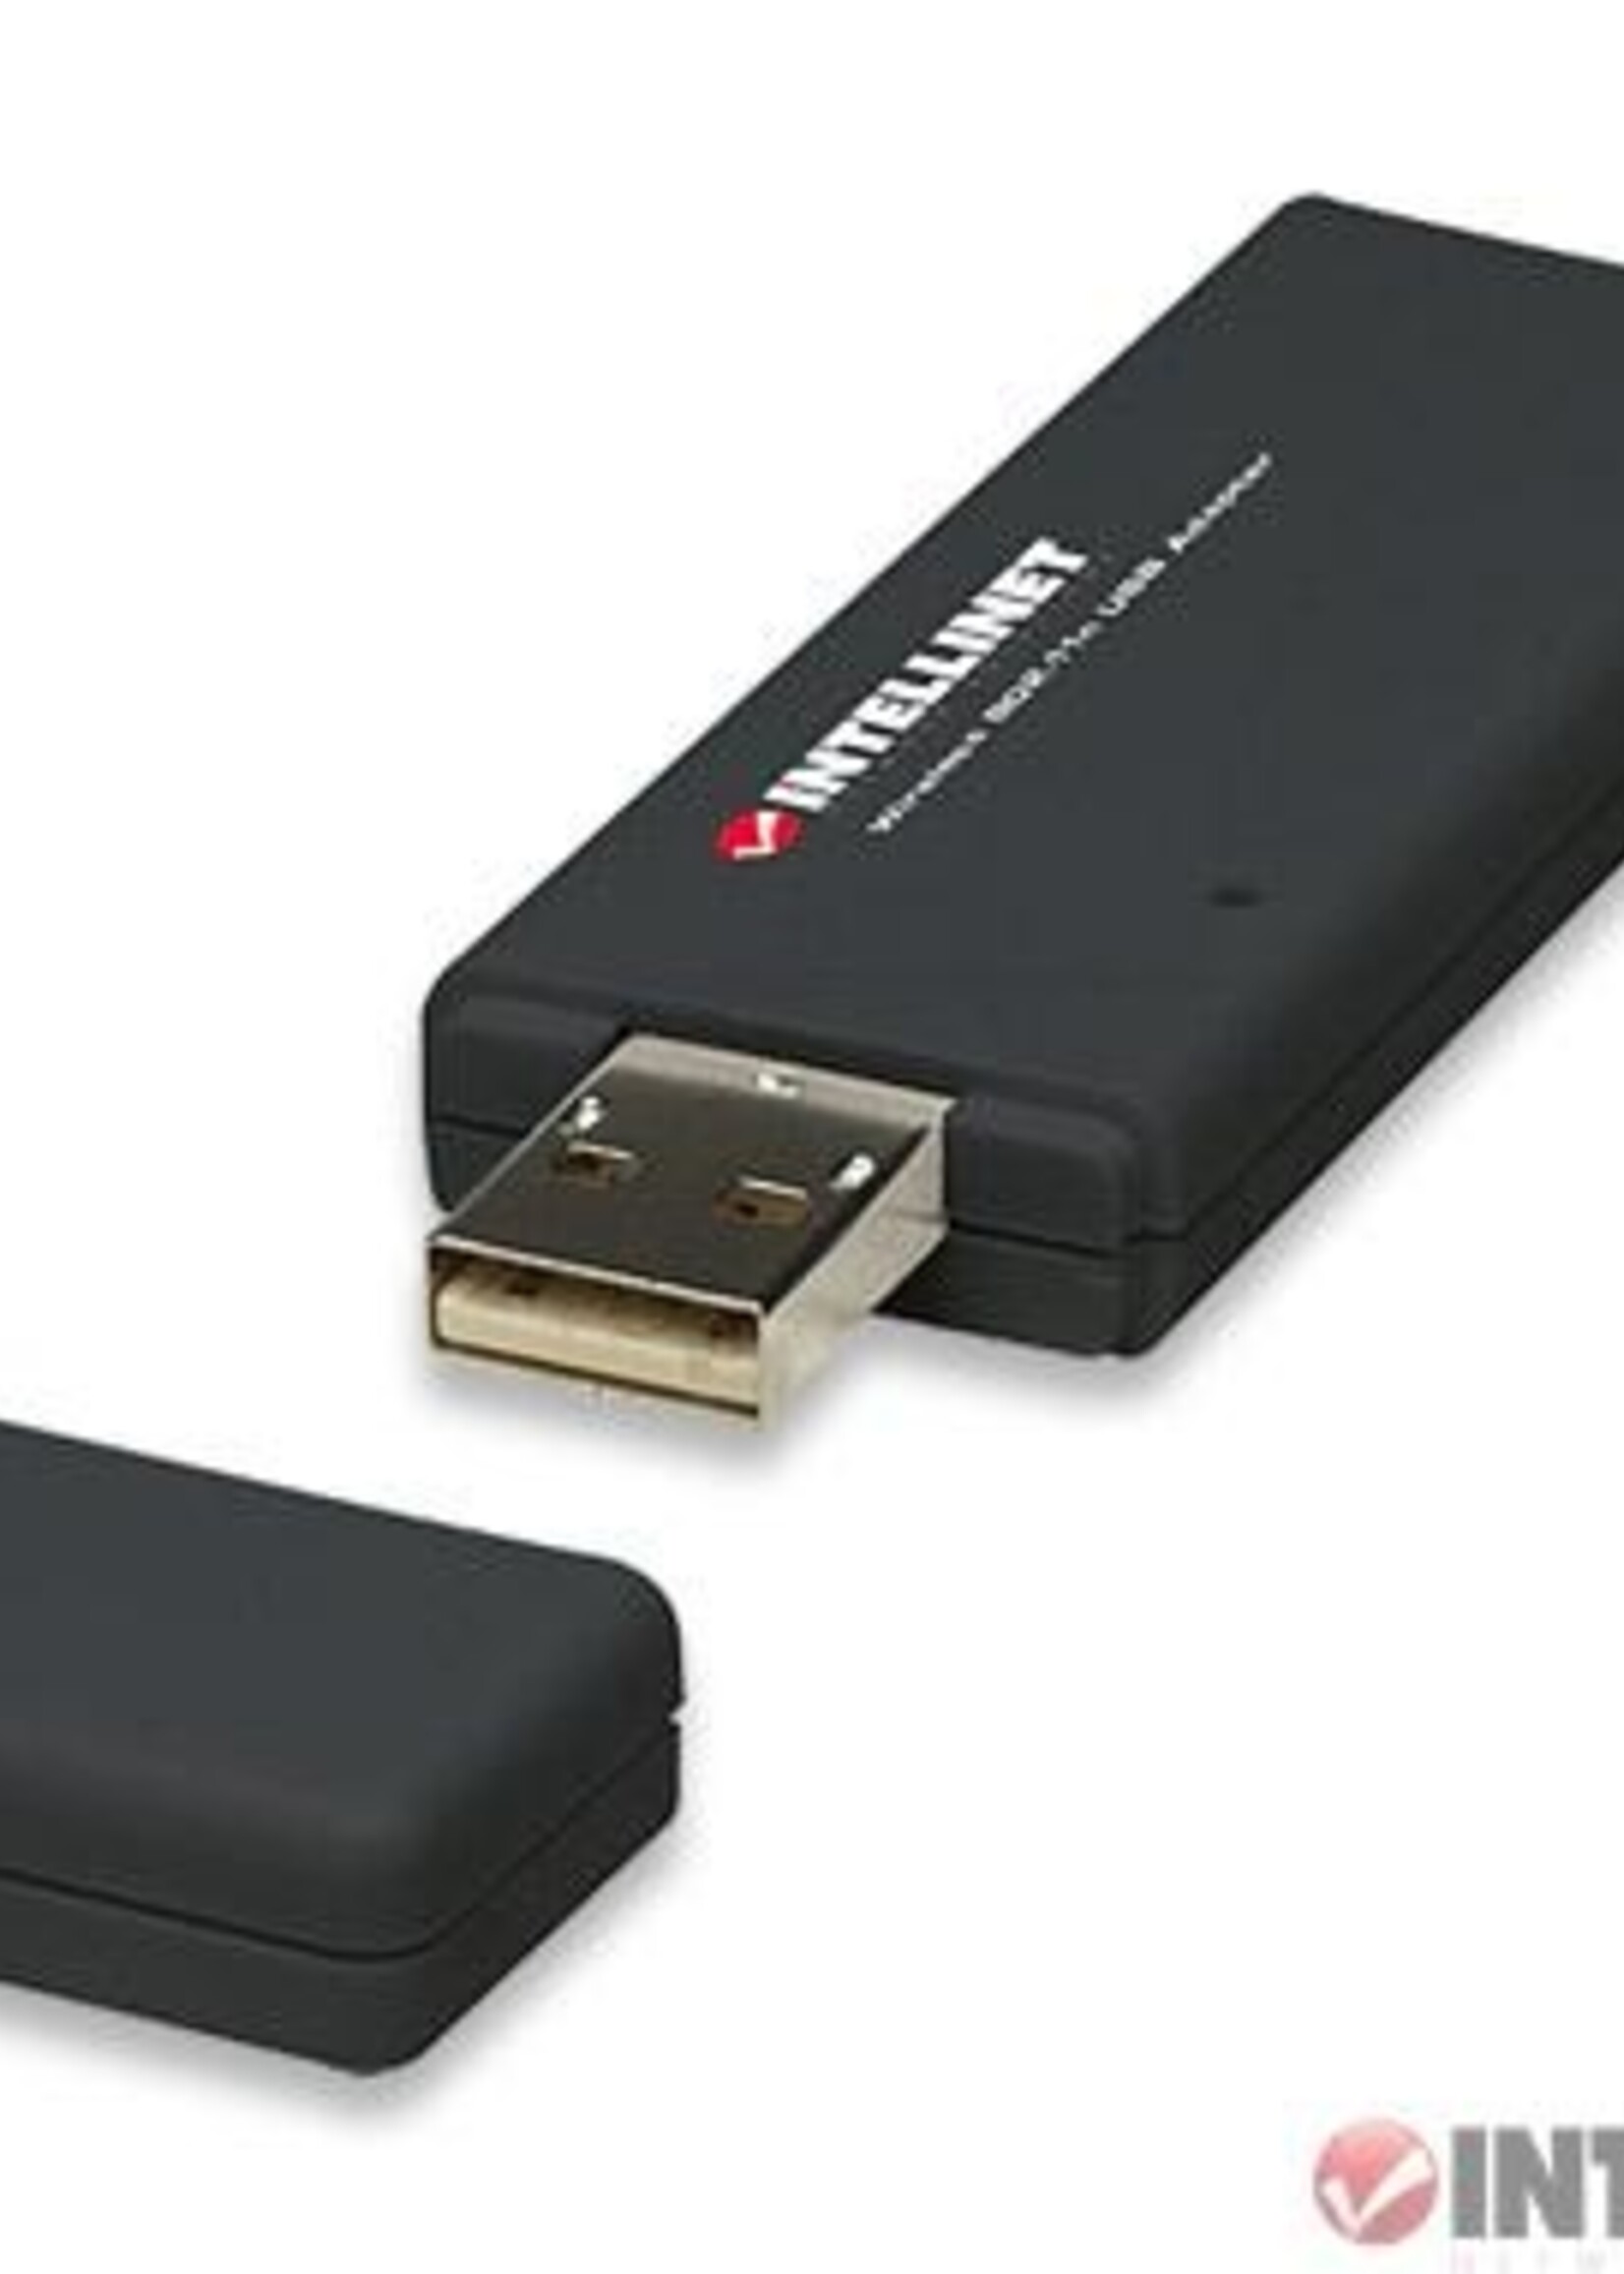 Intellinet Intellinet 150Mbs USB Wireless